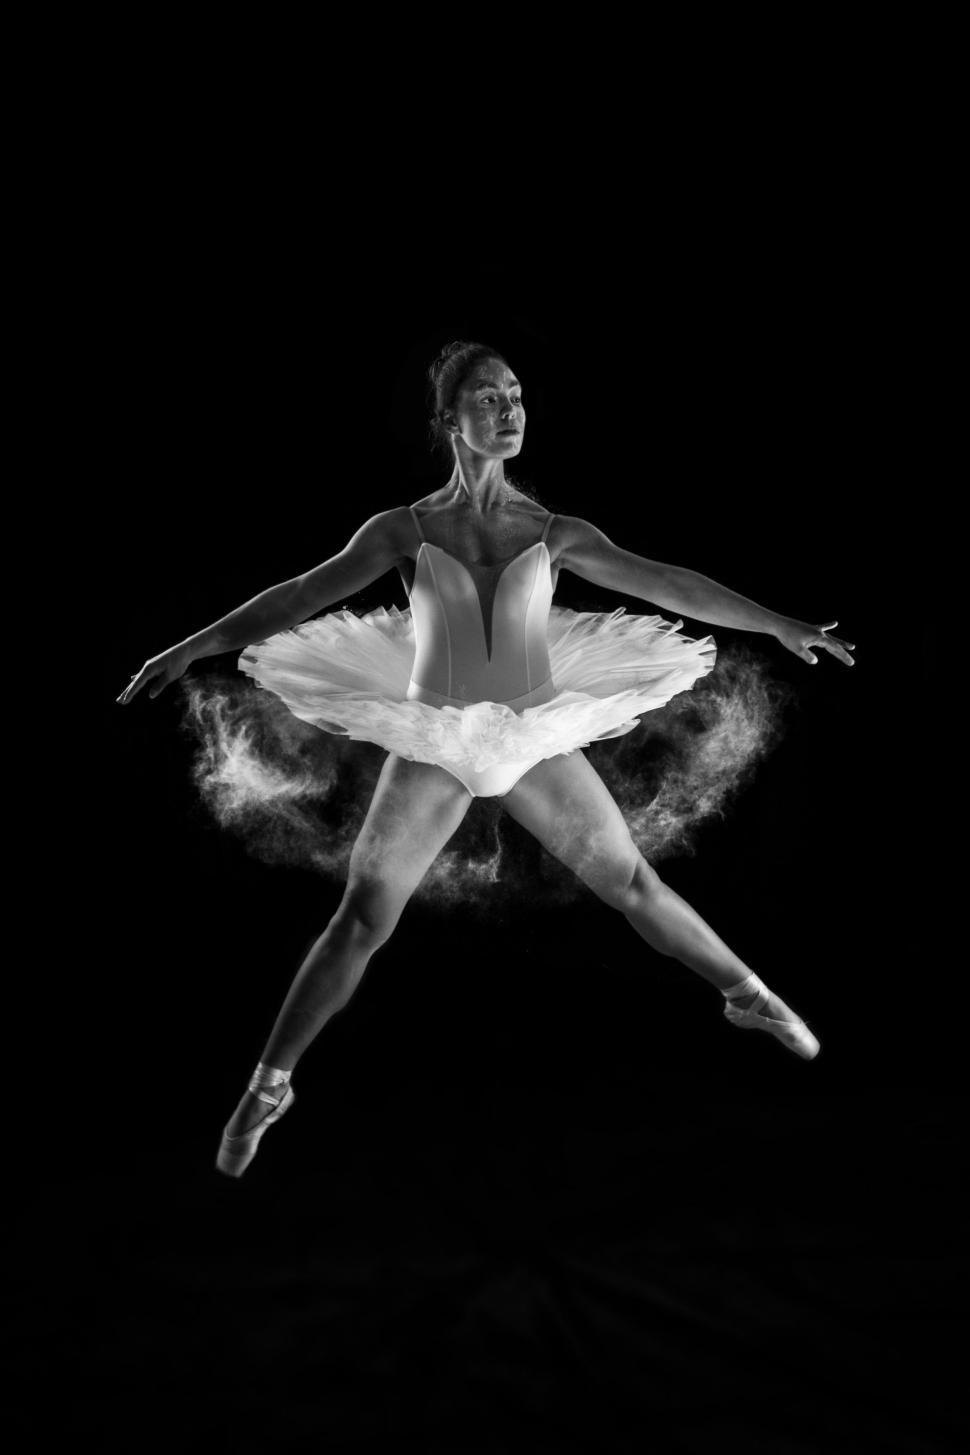 Free Image of ballet dancer silhouette art body dance 